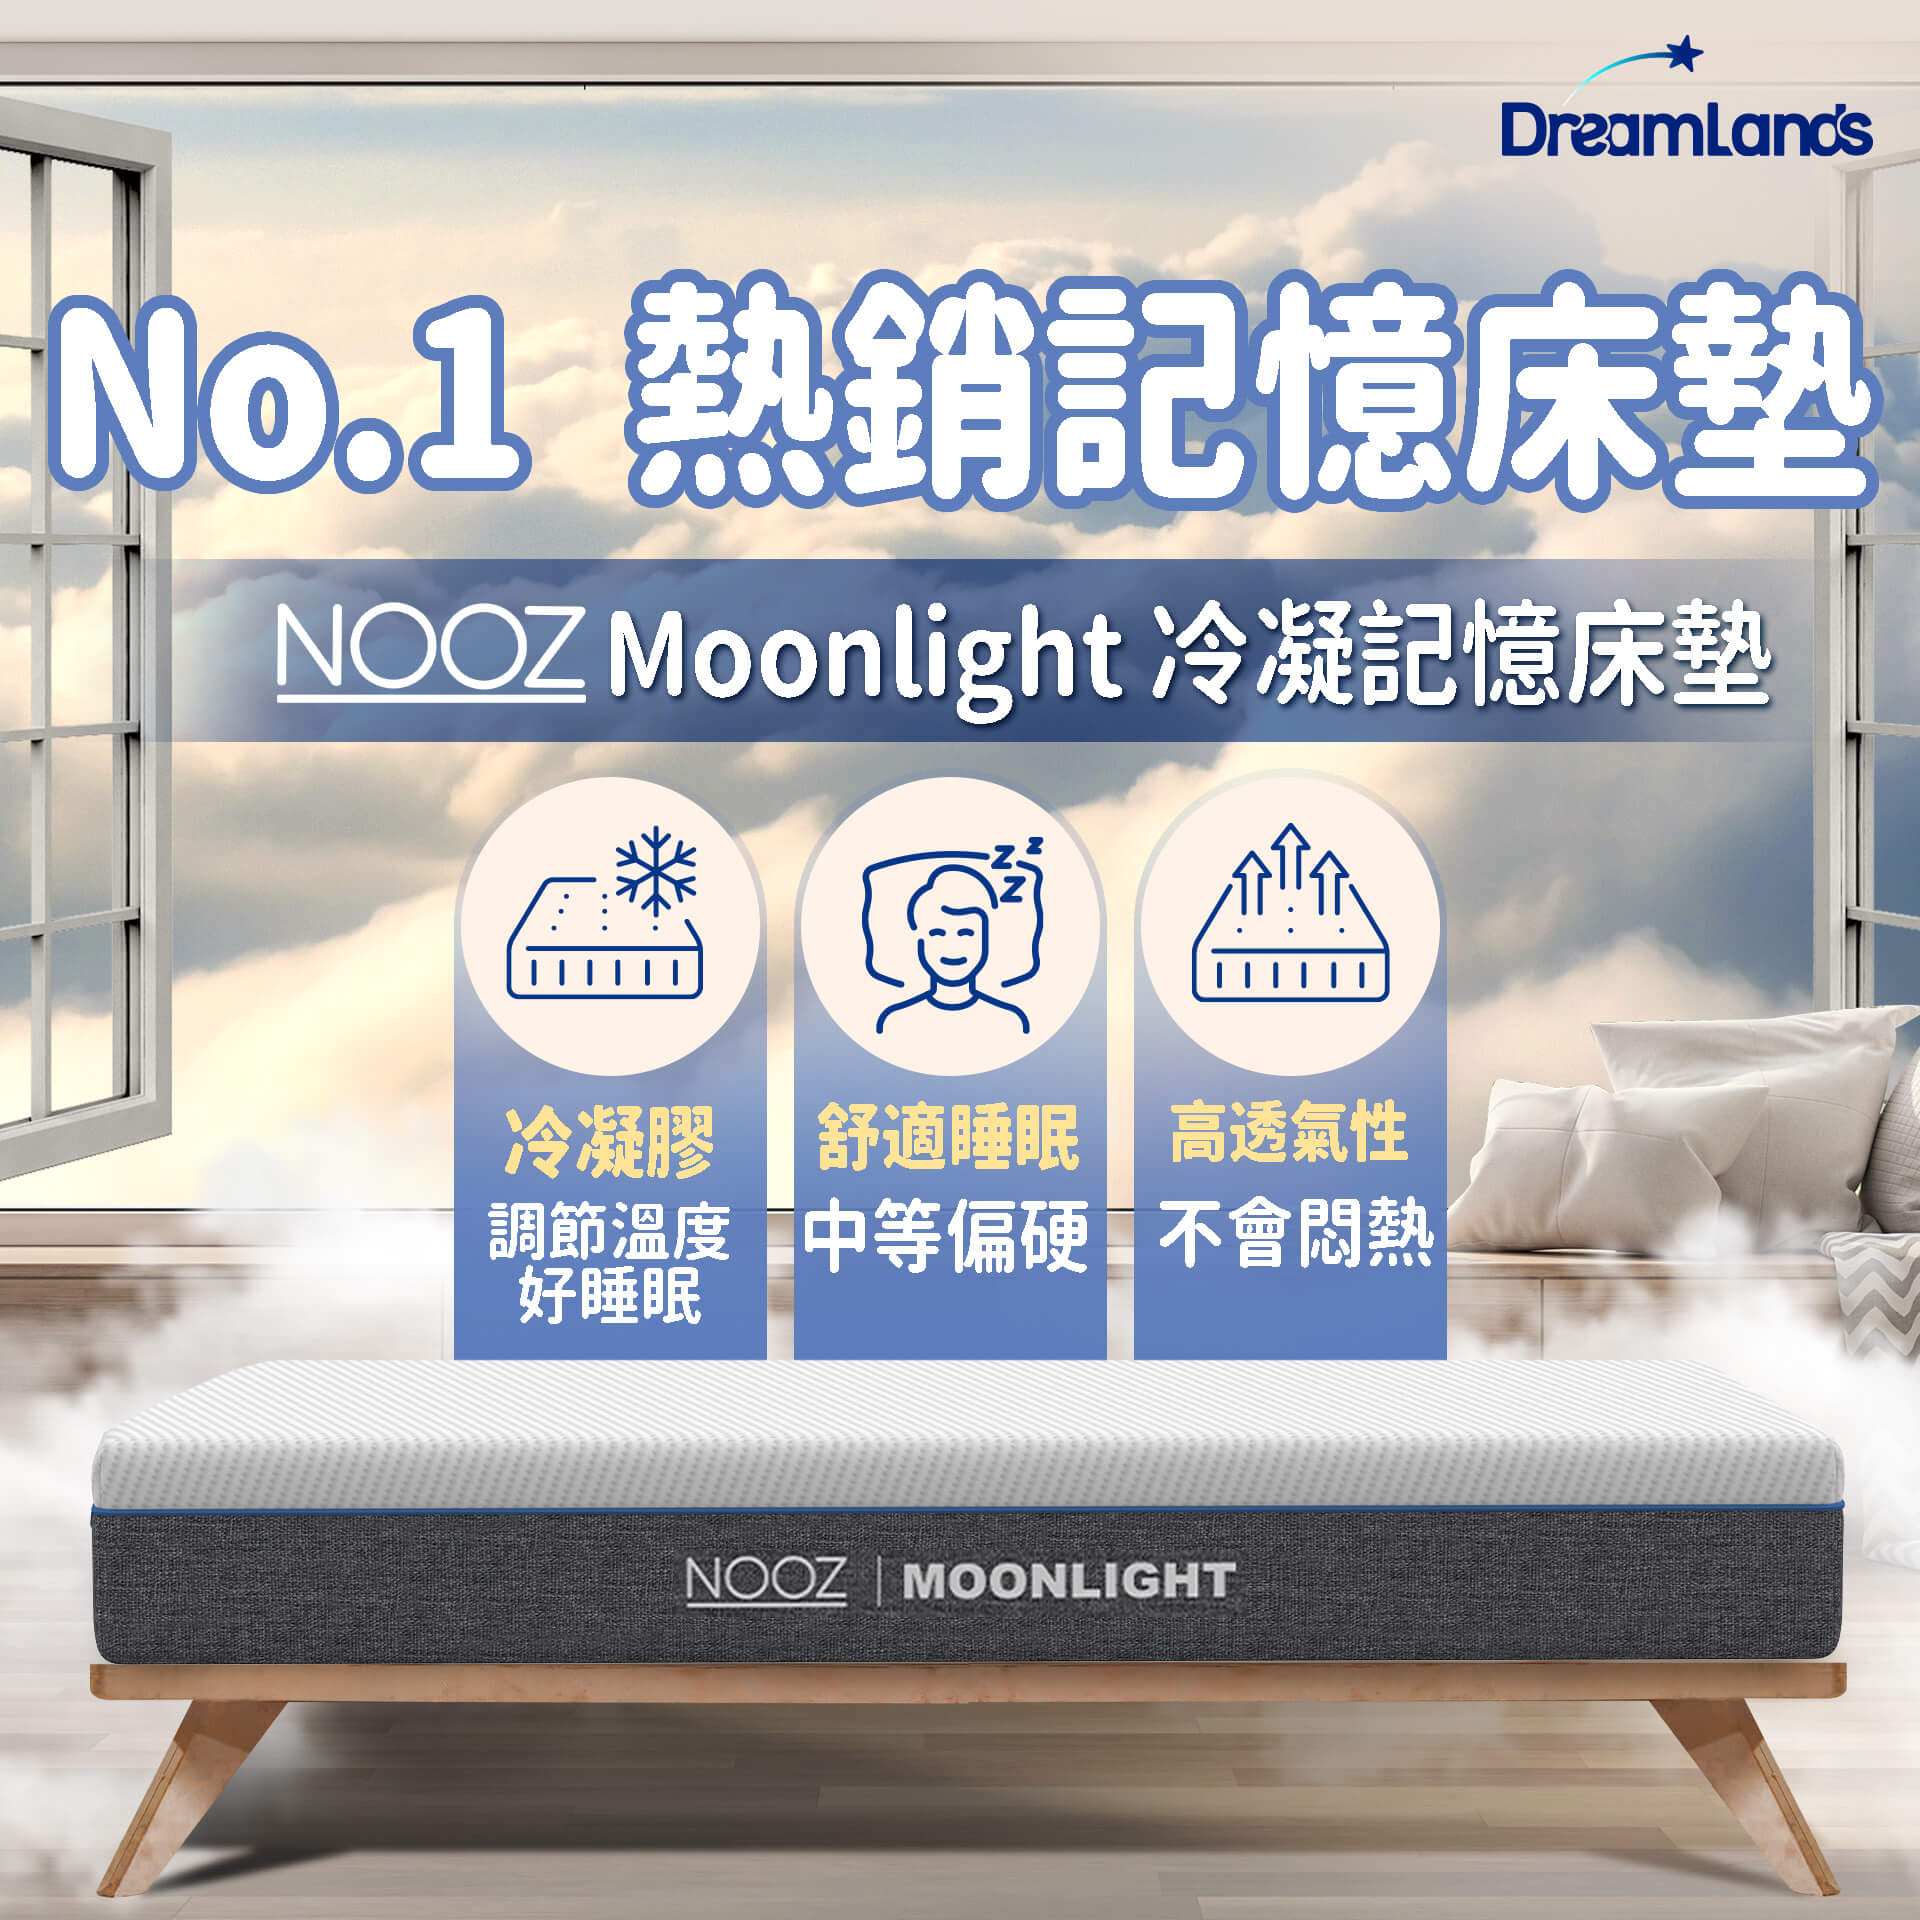 Nooz Moonlight特色